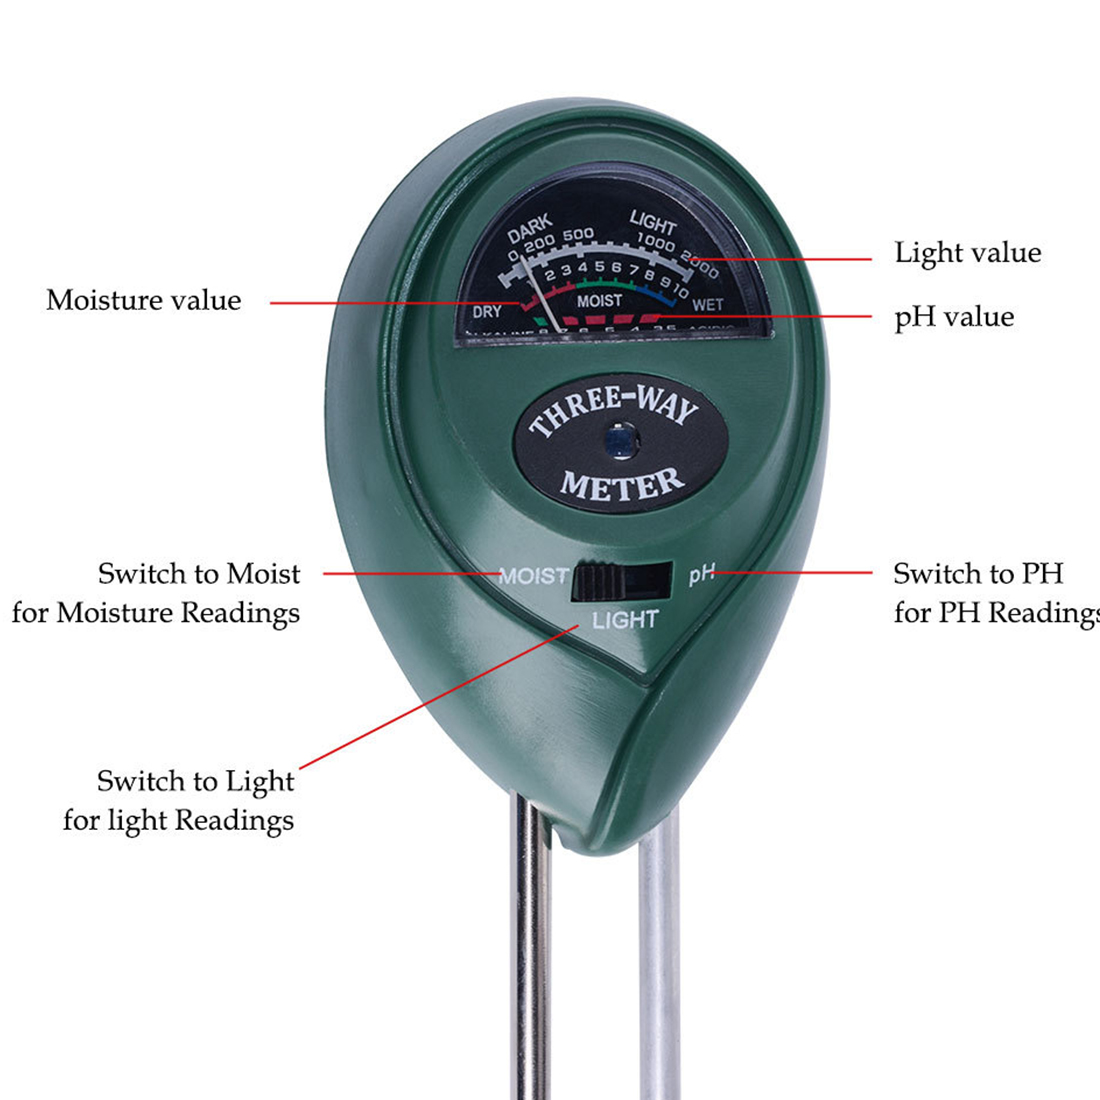 3 in 1 soil PH meter Moist Moisture Light sensor Monitor